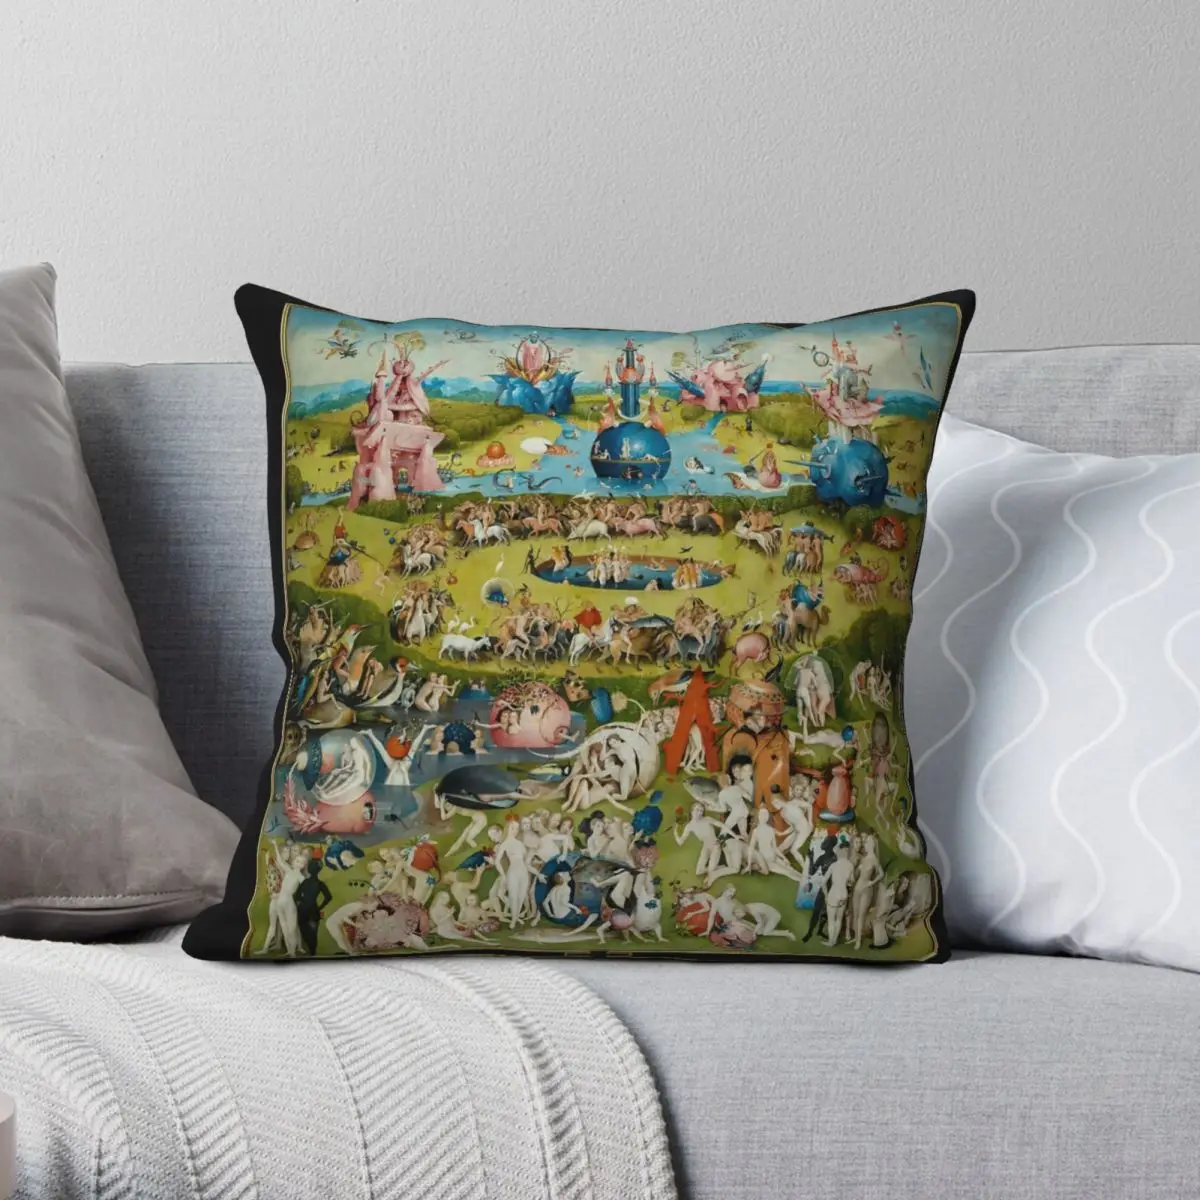 

Hieronymus Bosch The Garden Of Earthly Delights Square Pillowcase Polyester Linen Velvet Creative Zip Decor Sofa Cover 45x45